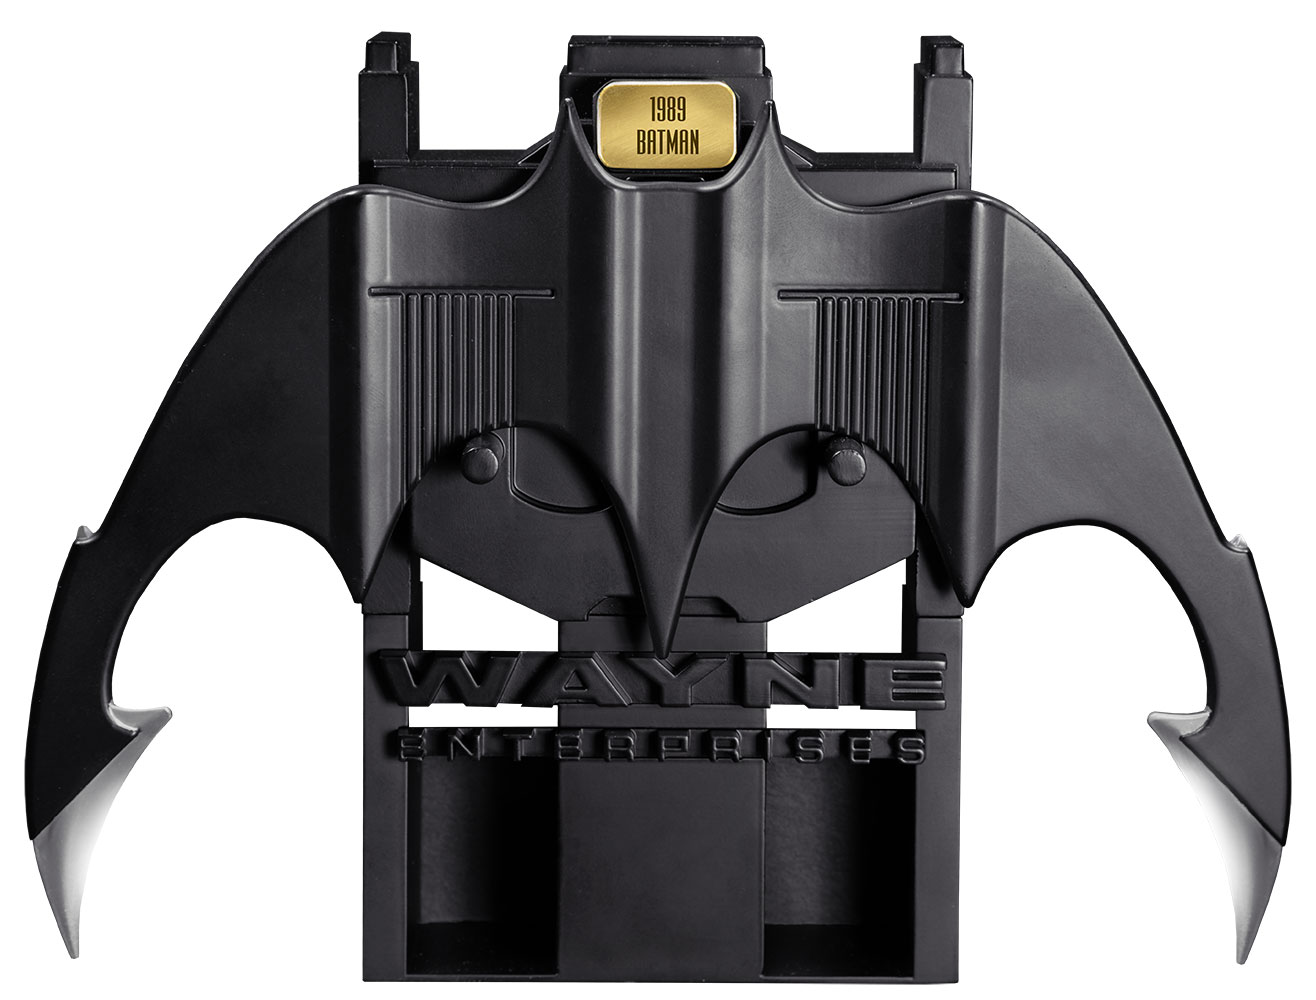 batman beyond batarang replica